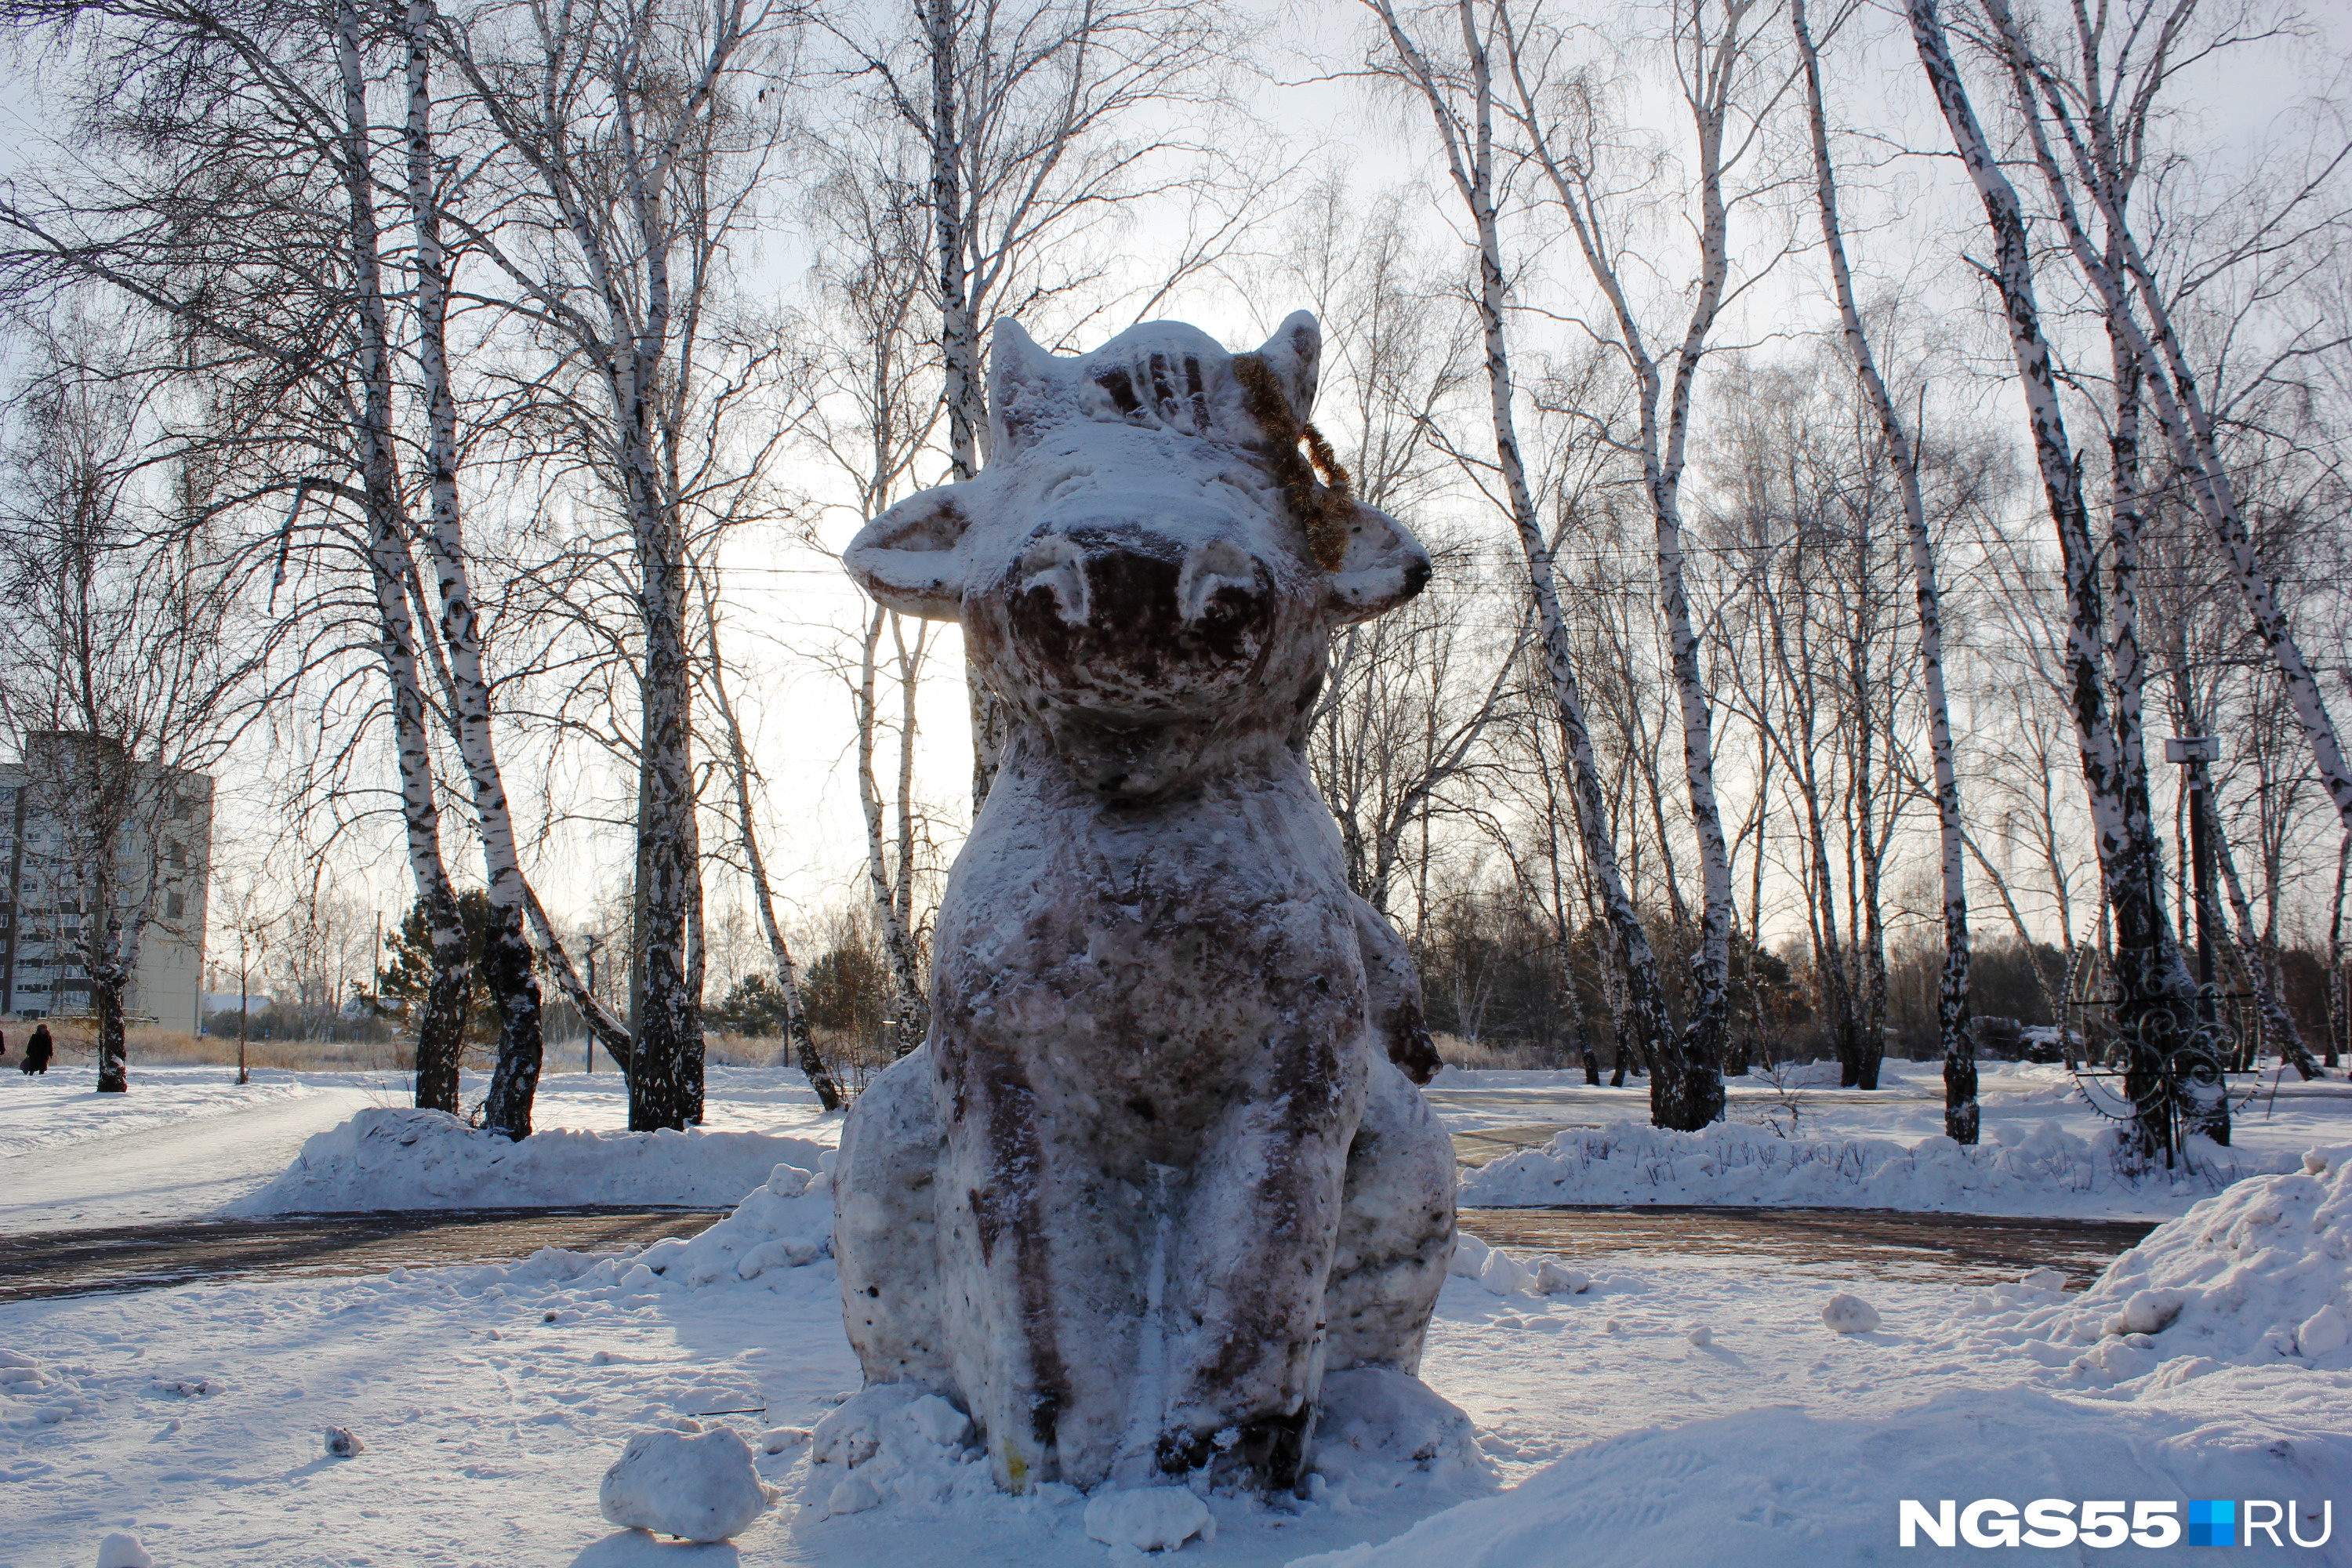 А в стороне от них под снегом притаился счастливый бычок, который пытается изображать собаку. На один из рогов заботливые местные жители повесили мишуру